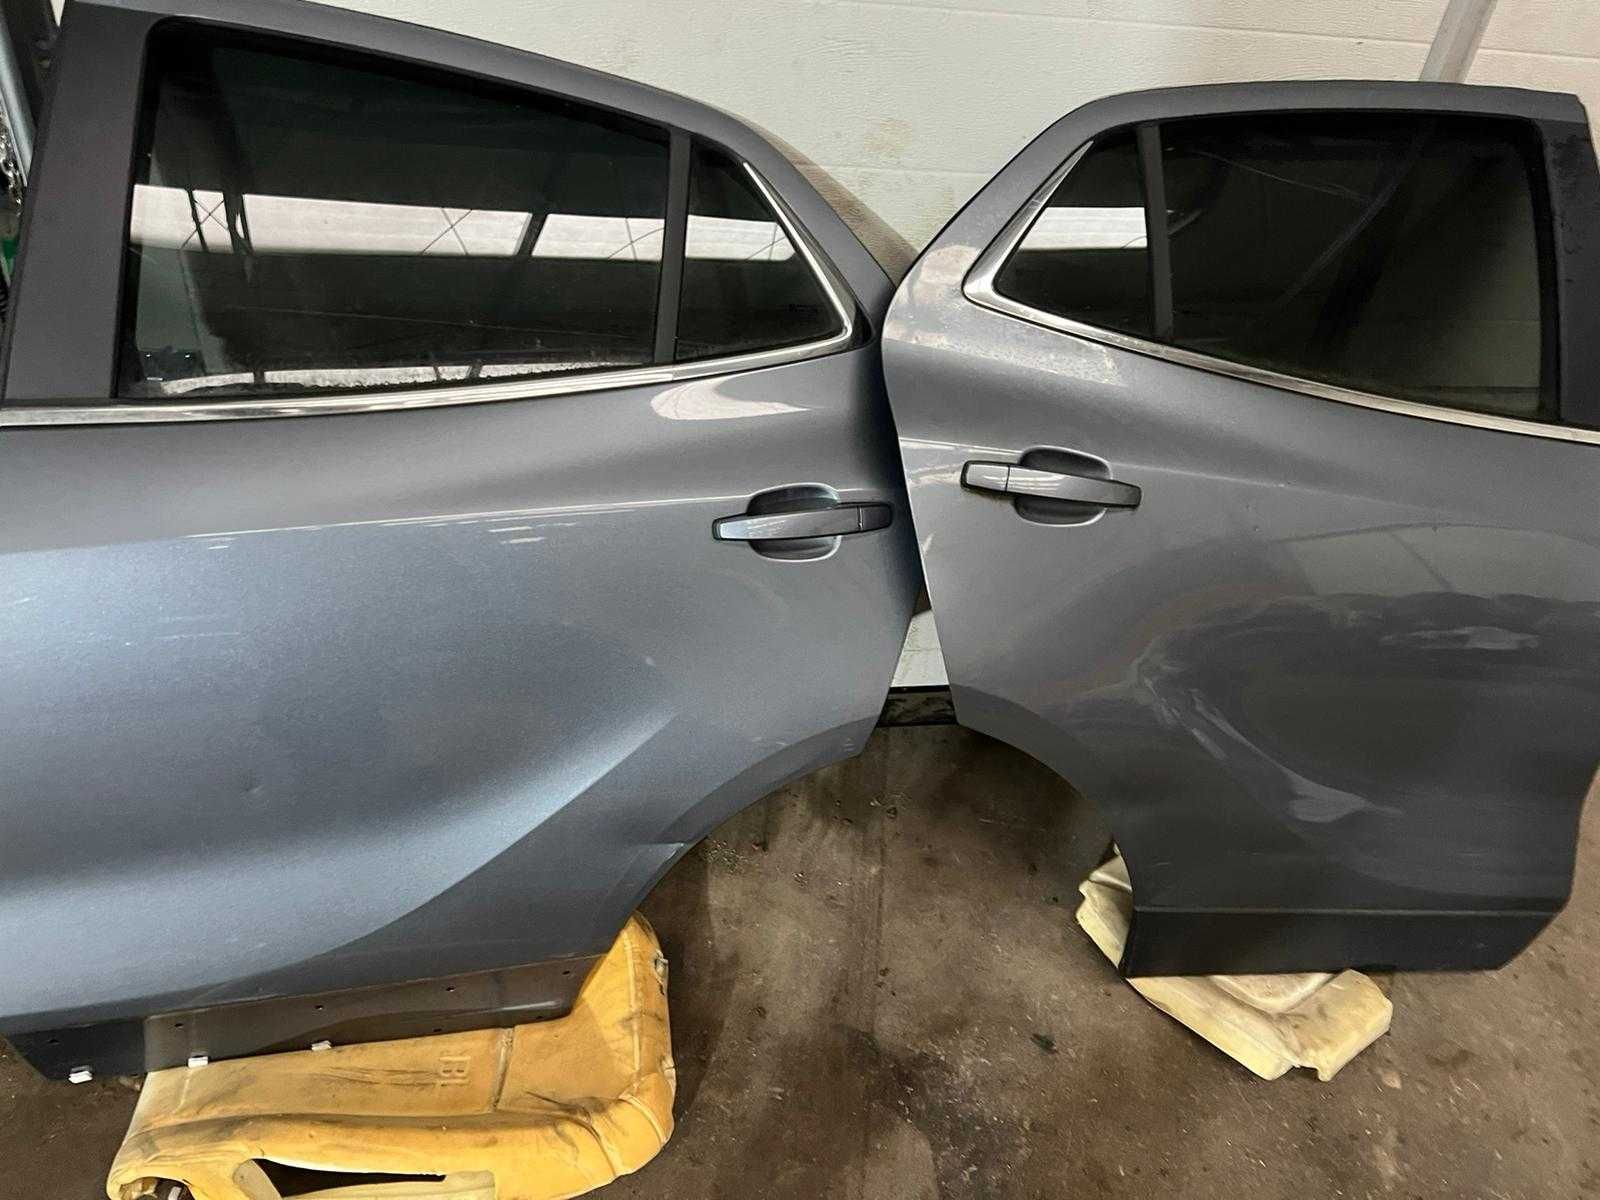 Drzwi Opel Mokka tylne prawe uszkodzone